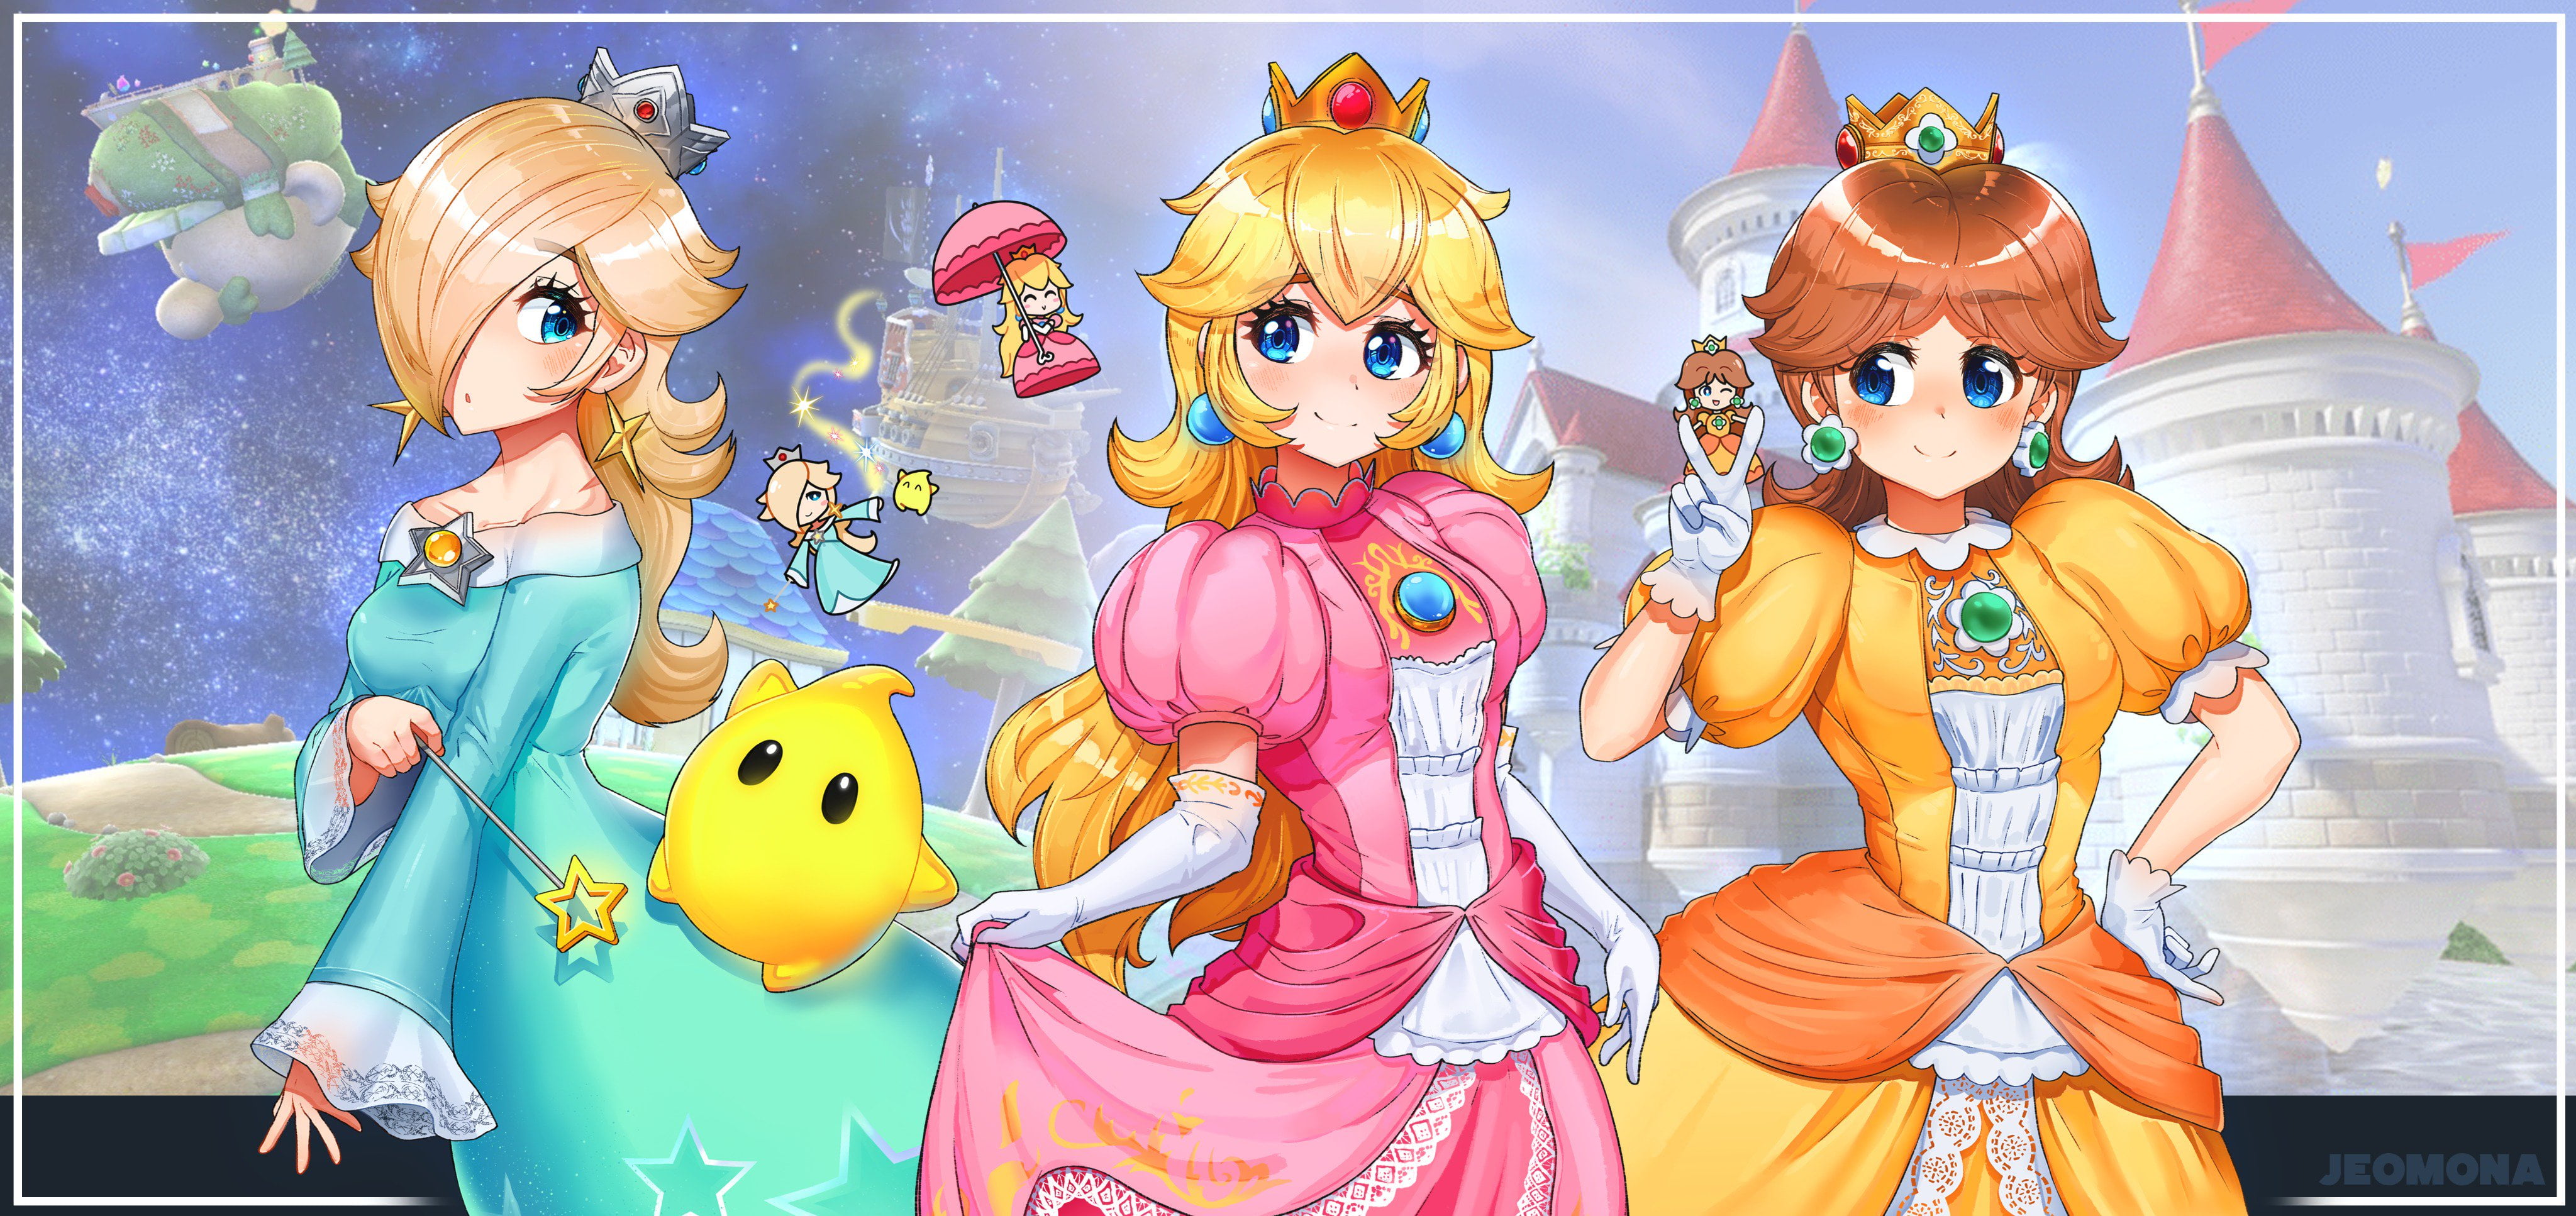 Free Download Hd Wallpaper Mario Bros Princess Rosalina Princess Daisy Princess Peach 